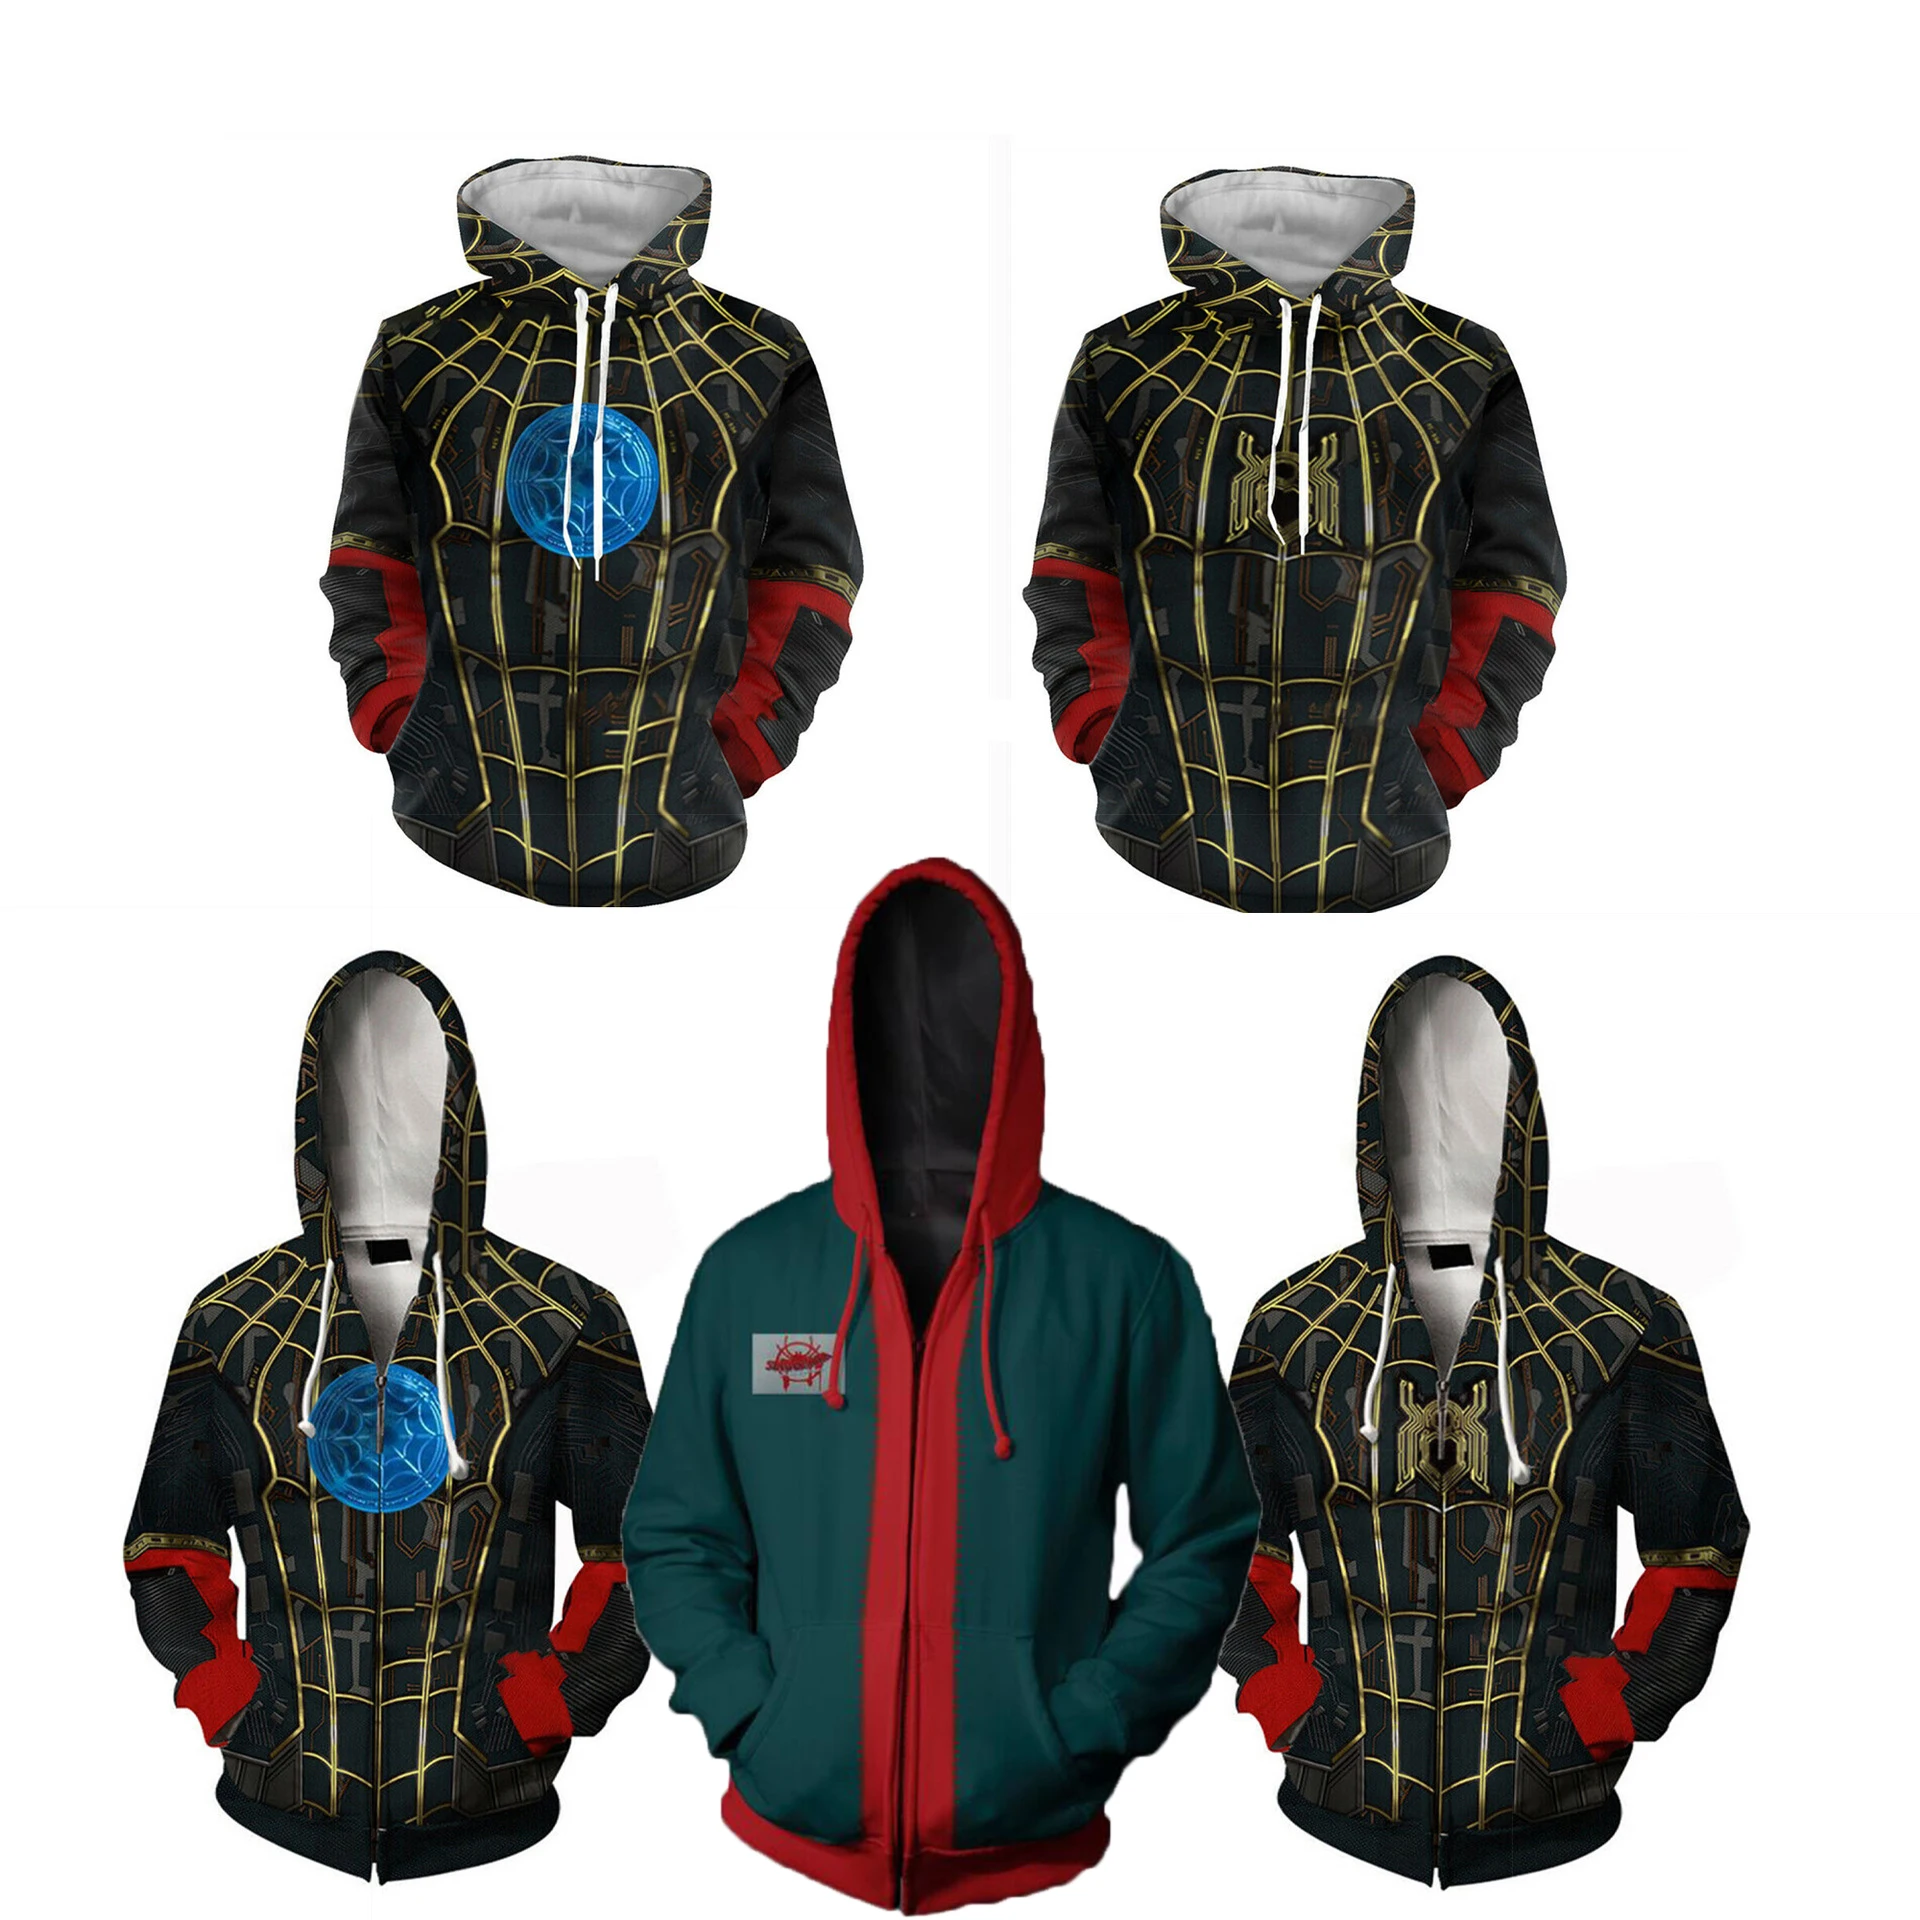 Superhero Weit Von Zu Hause Cosplay Kostüme Männlichen Hoodies Sweatshirts Hut Jacken Spinne Männer Peter Parker Street Zipper Anzug